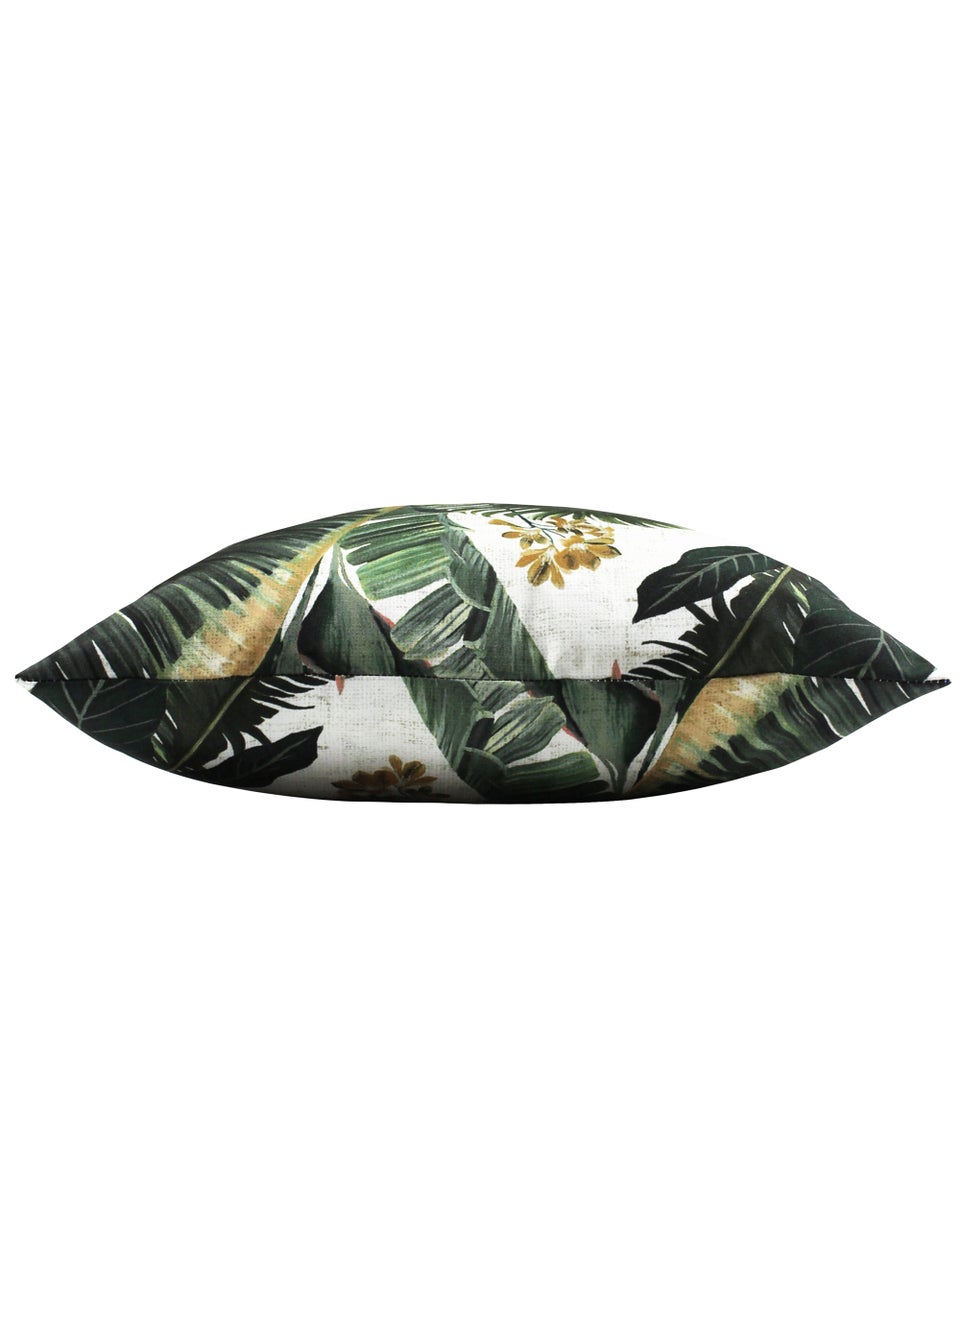 furn. Hawaii Filled Outdoor Cushion (43cm x 43cm x 8cm)